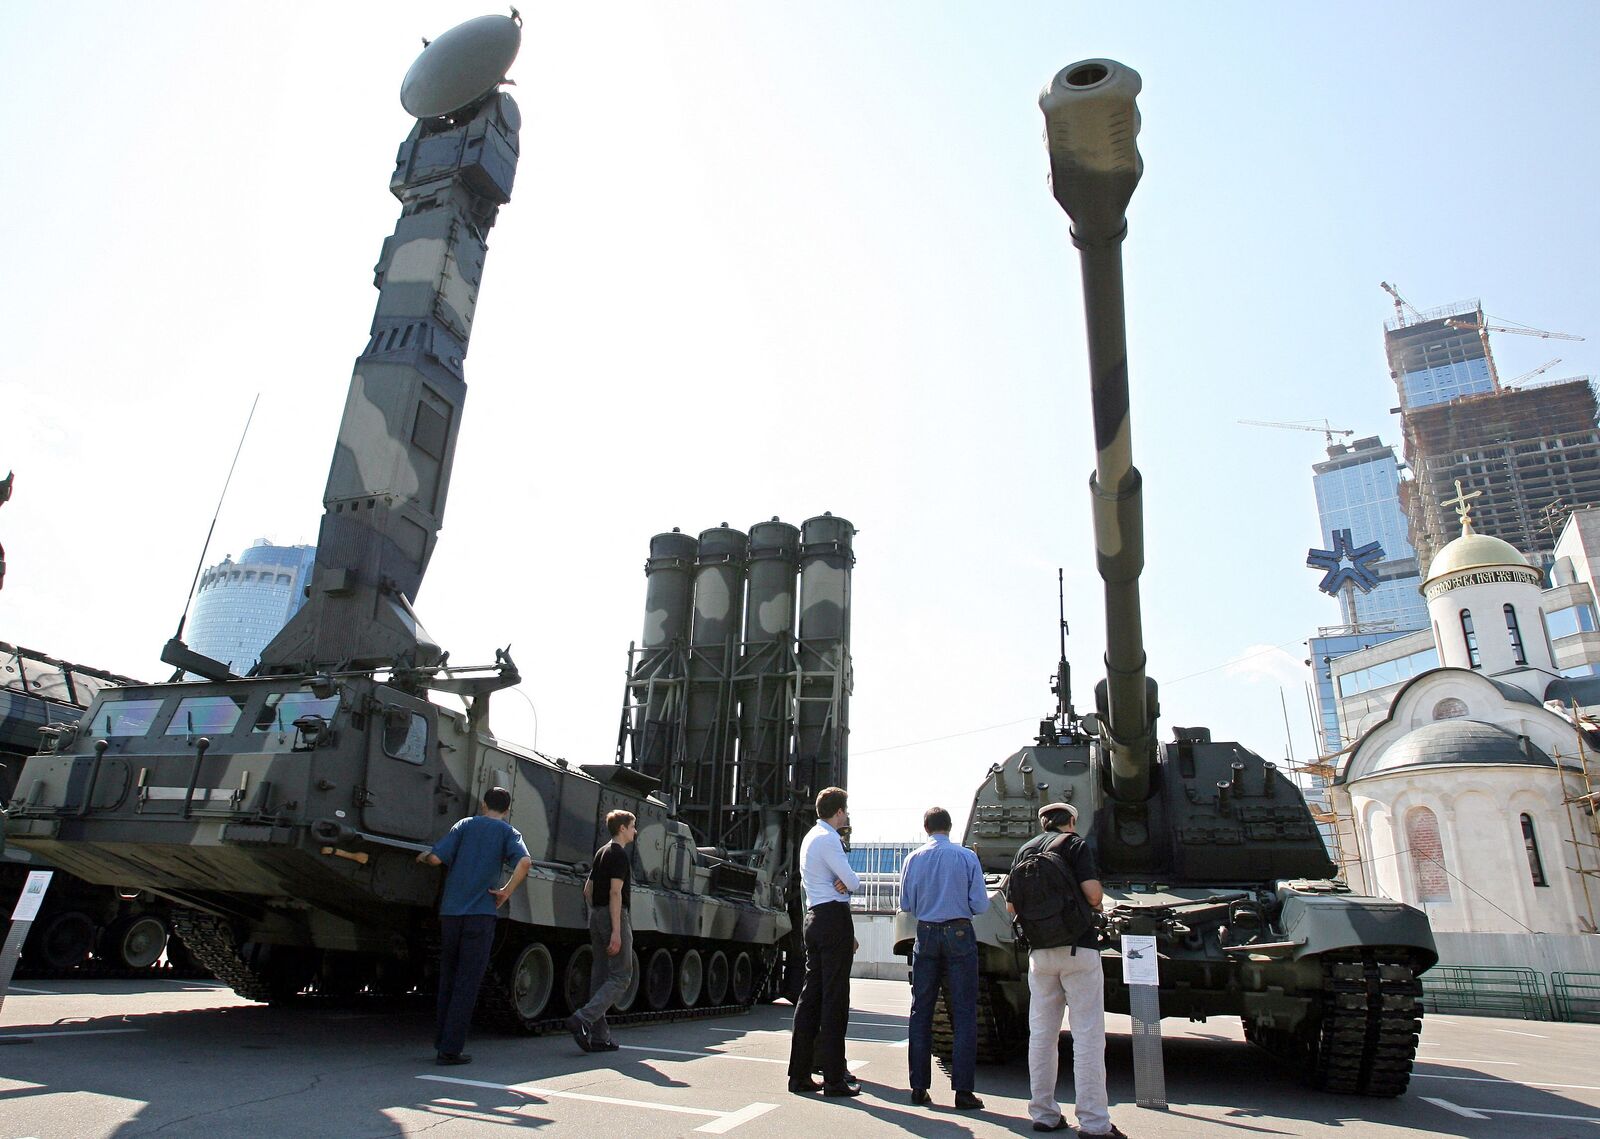 Varias personas observan tanques y veh&iacute;culos lanzamisiles durante una feria armament&iacute;stica celebrada en 2008 en Mosc&uacute;. (Alexey SAZONOV/AFP)